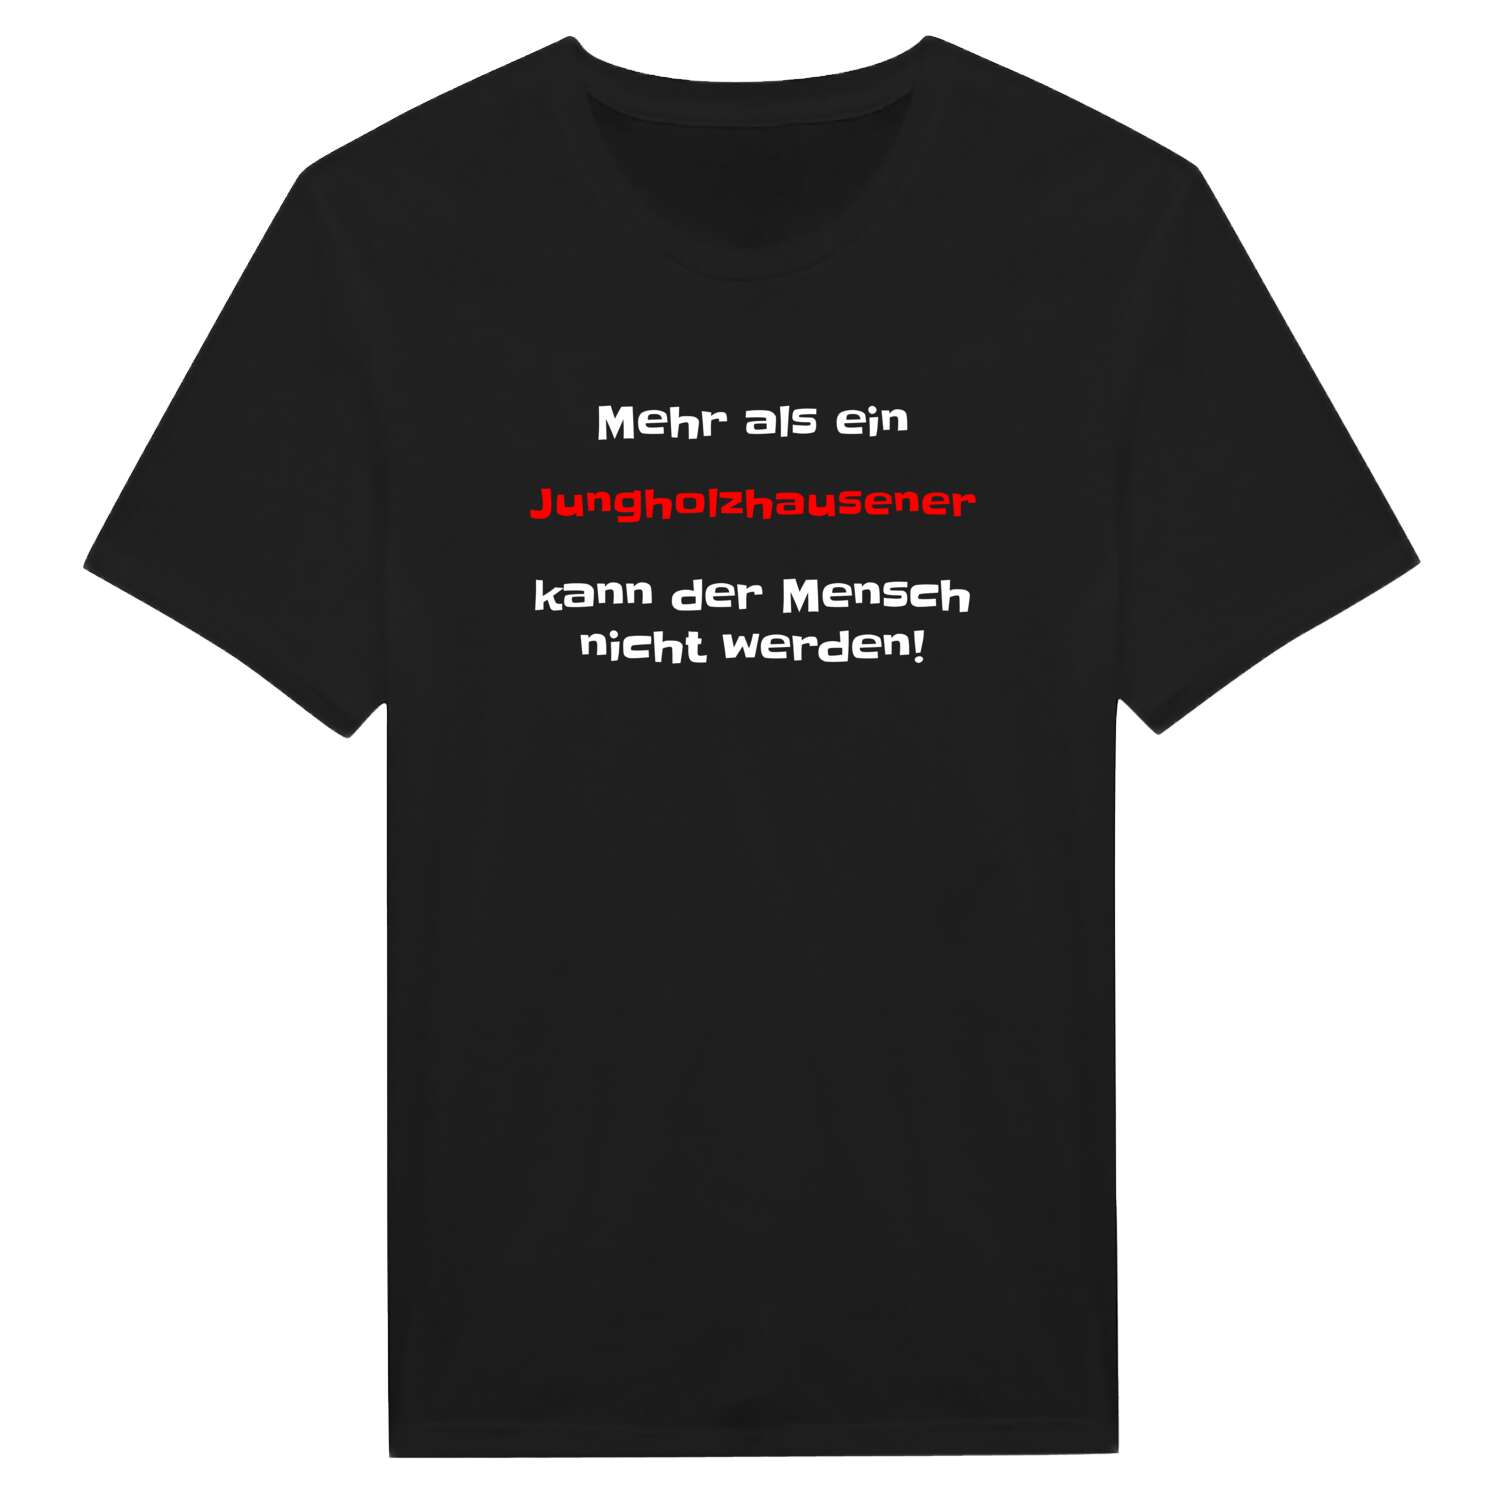 Jungholzhausen T-Shirt »Mehr als ein«